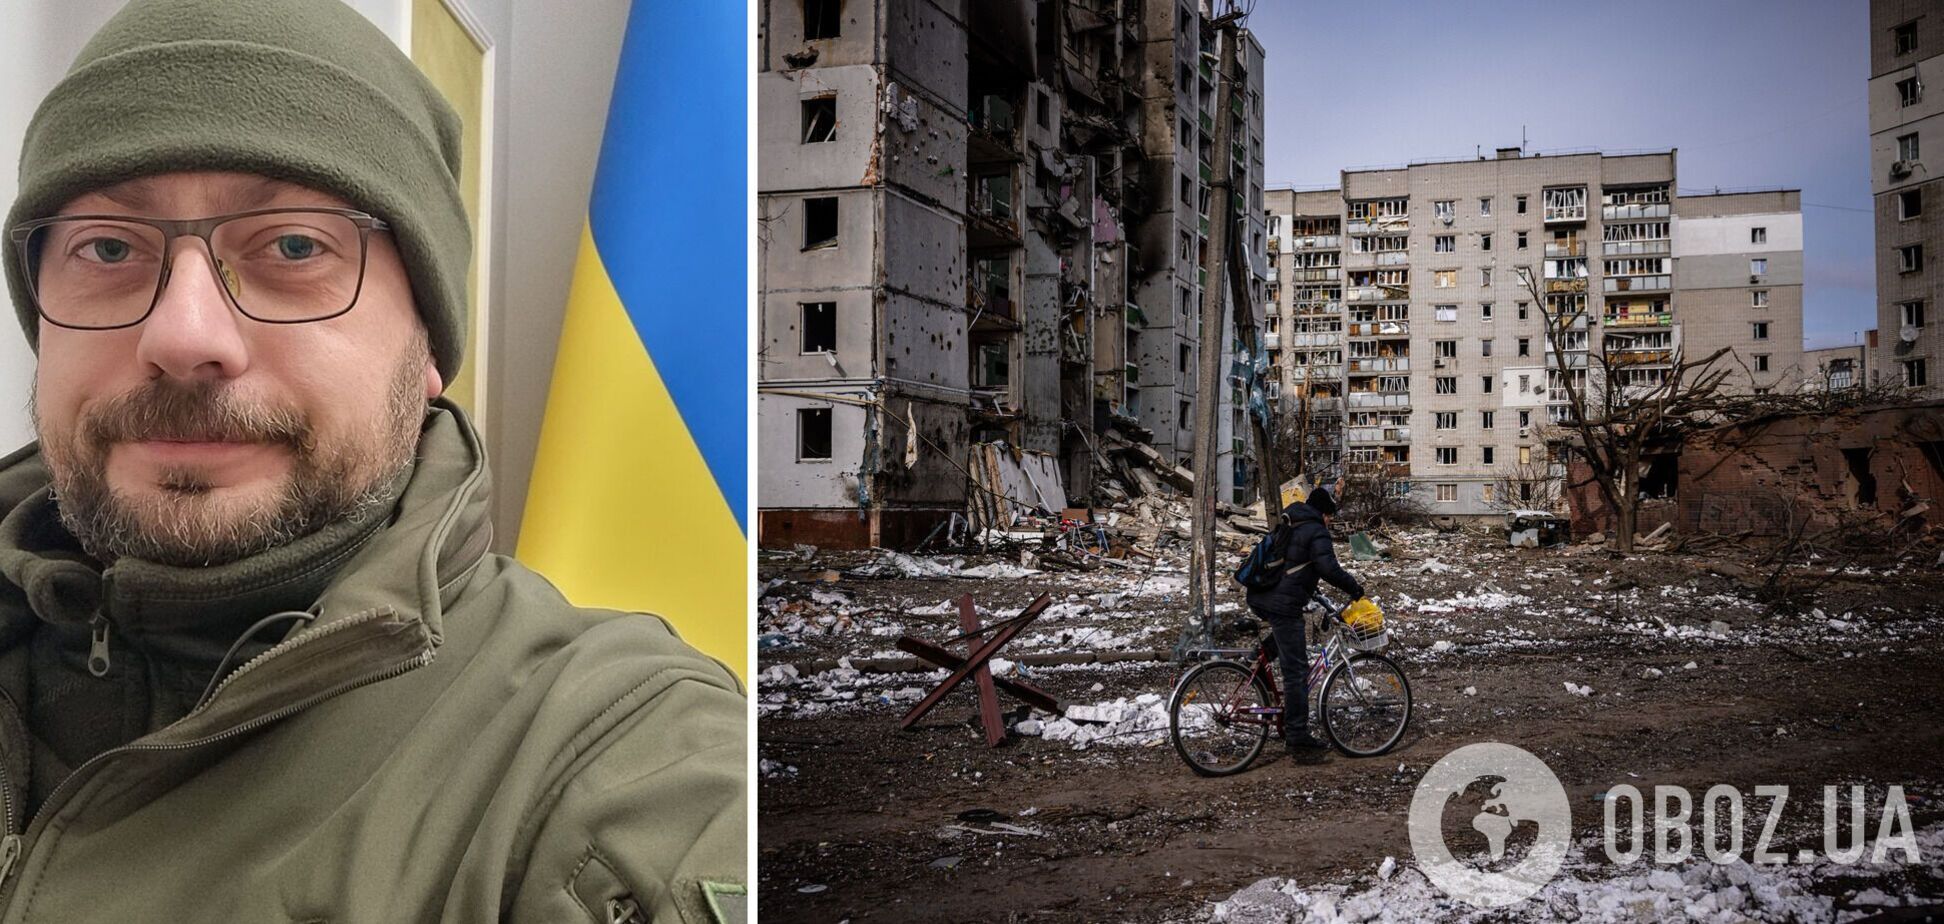 'За кожного ми помстимося': голова Чернігівської ОВА розповів про кількість загиблих та руйнування у місті. Відео